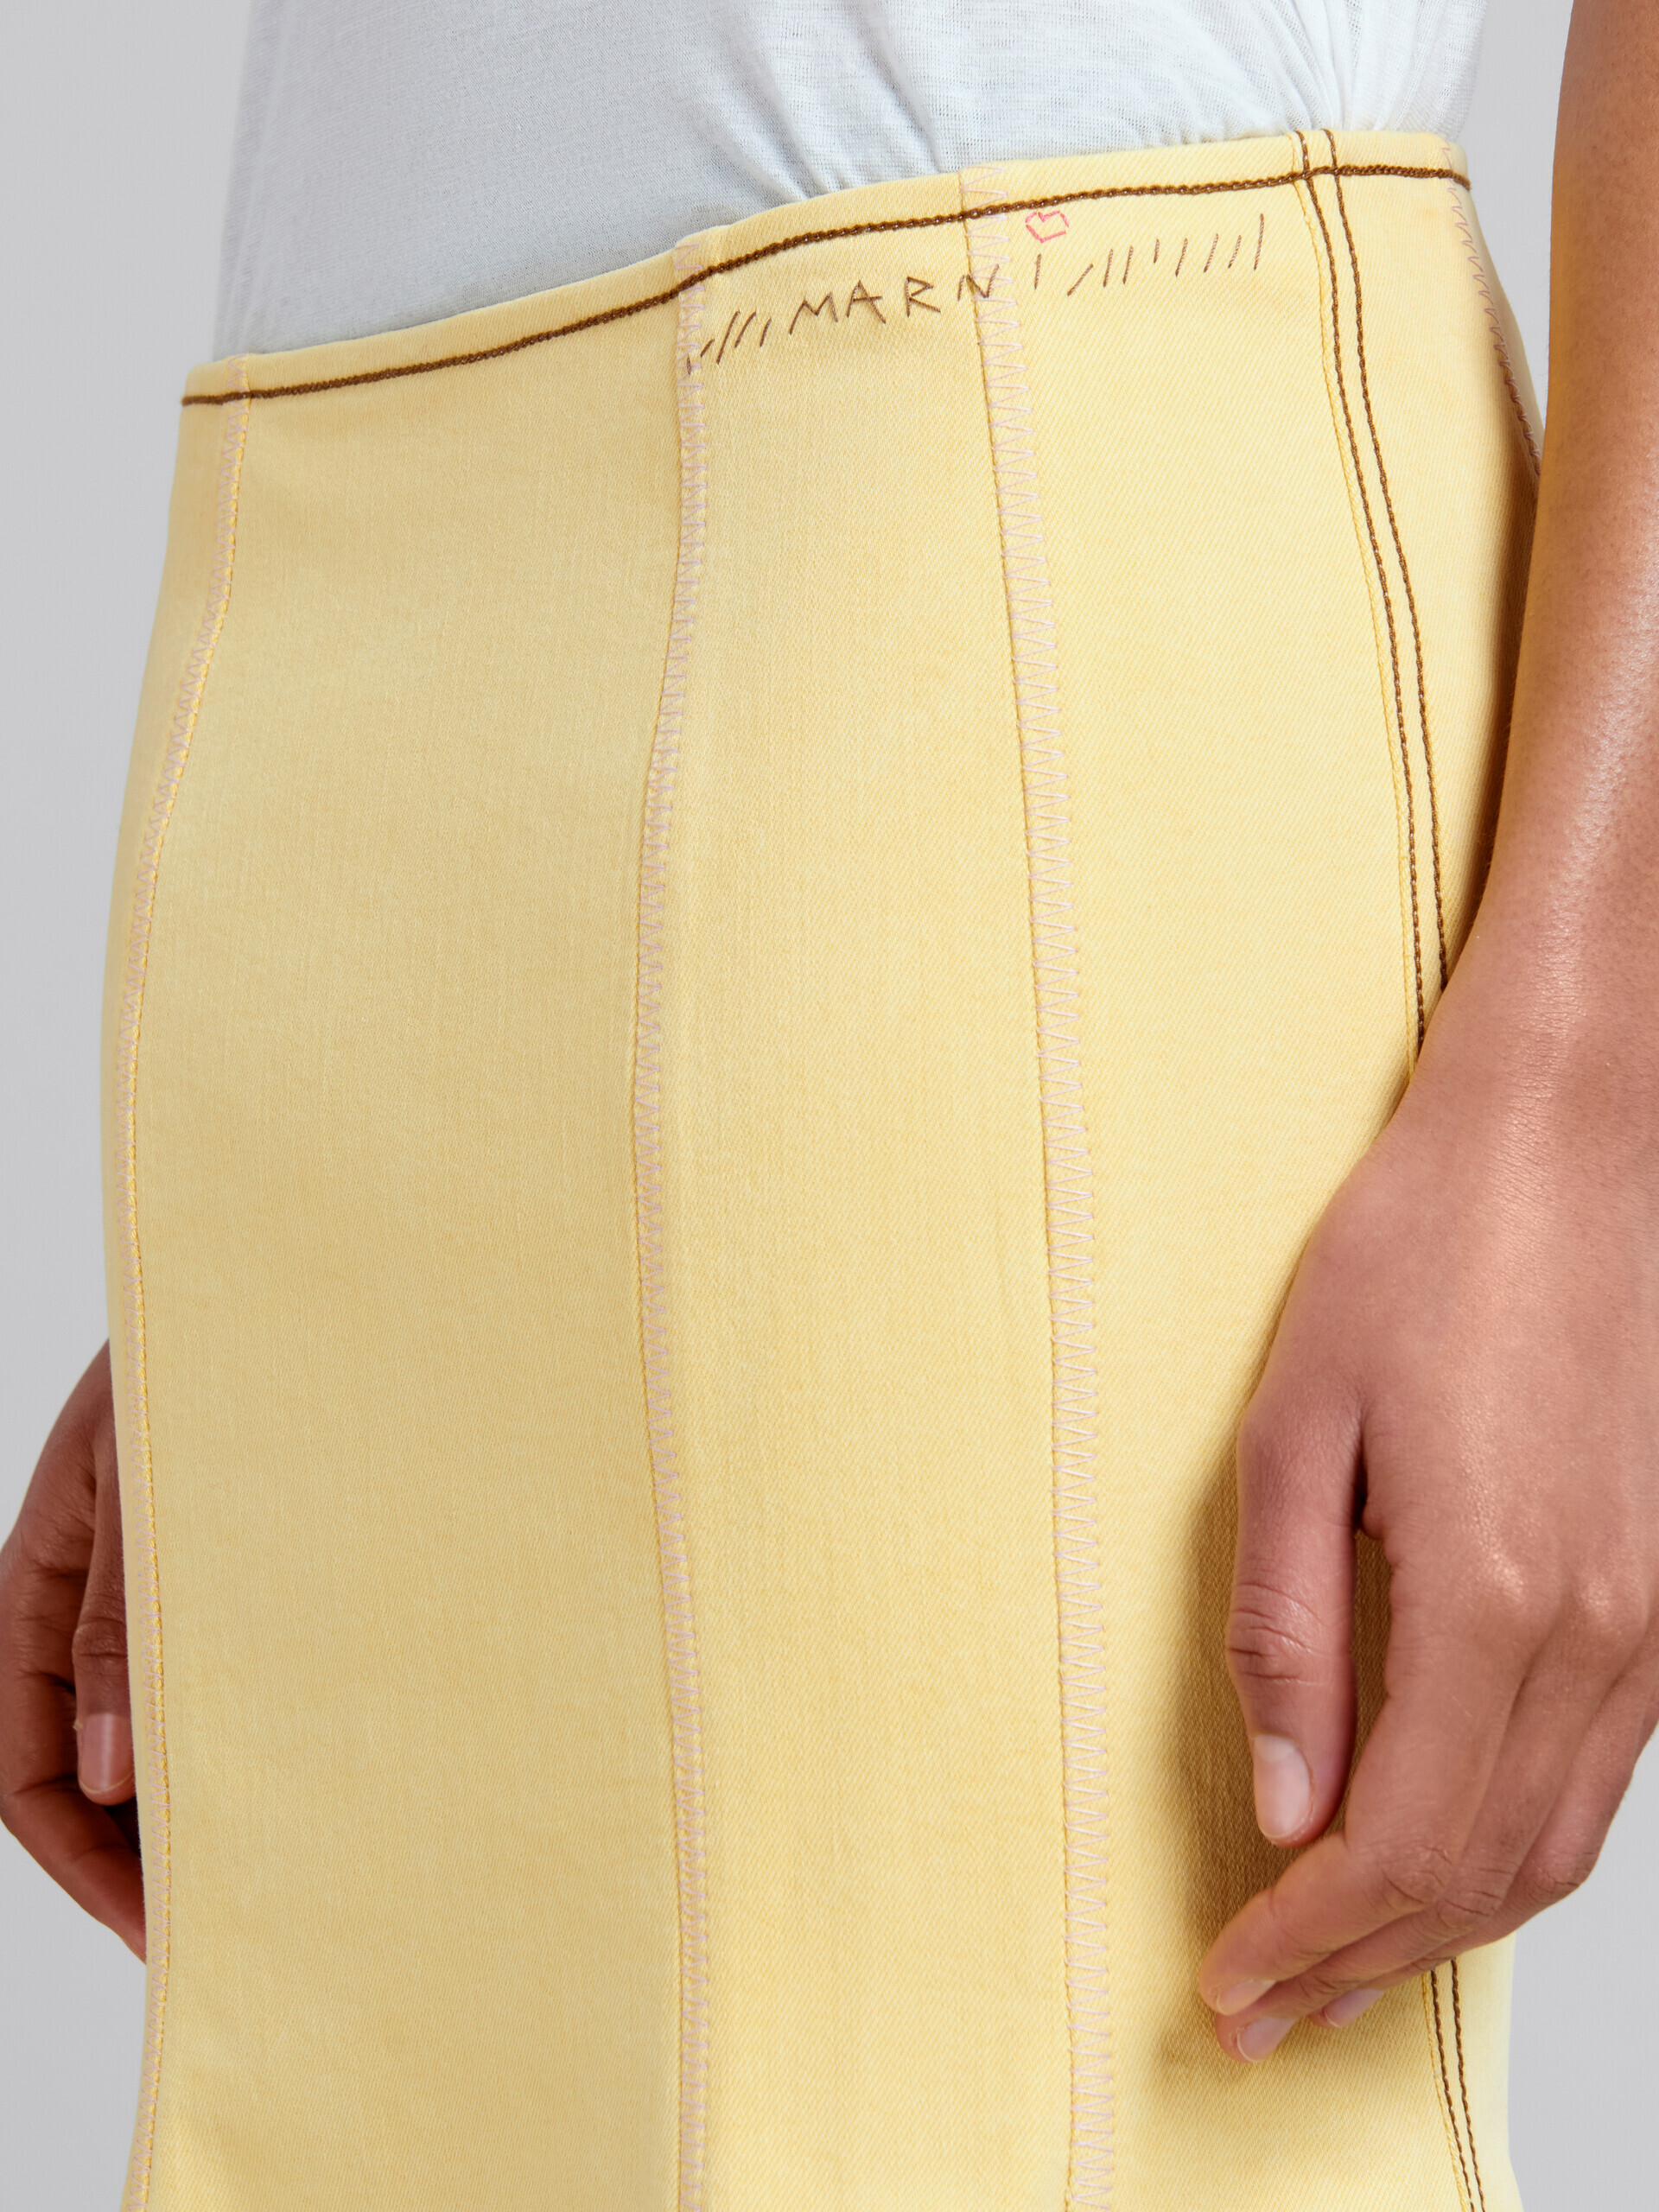 Yellow organic denim mermaid skirt with contrast stitching - Skirts - Image 4